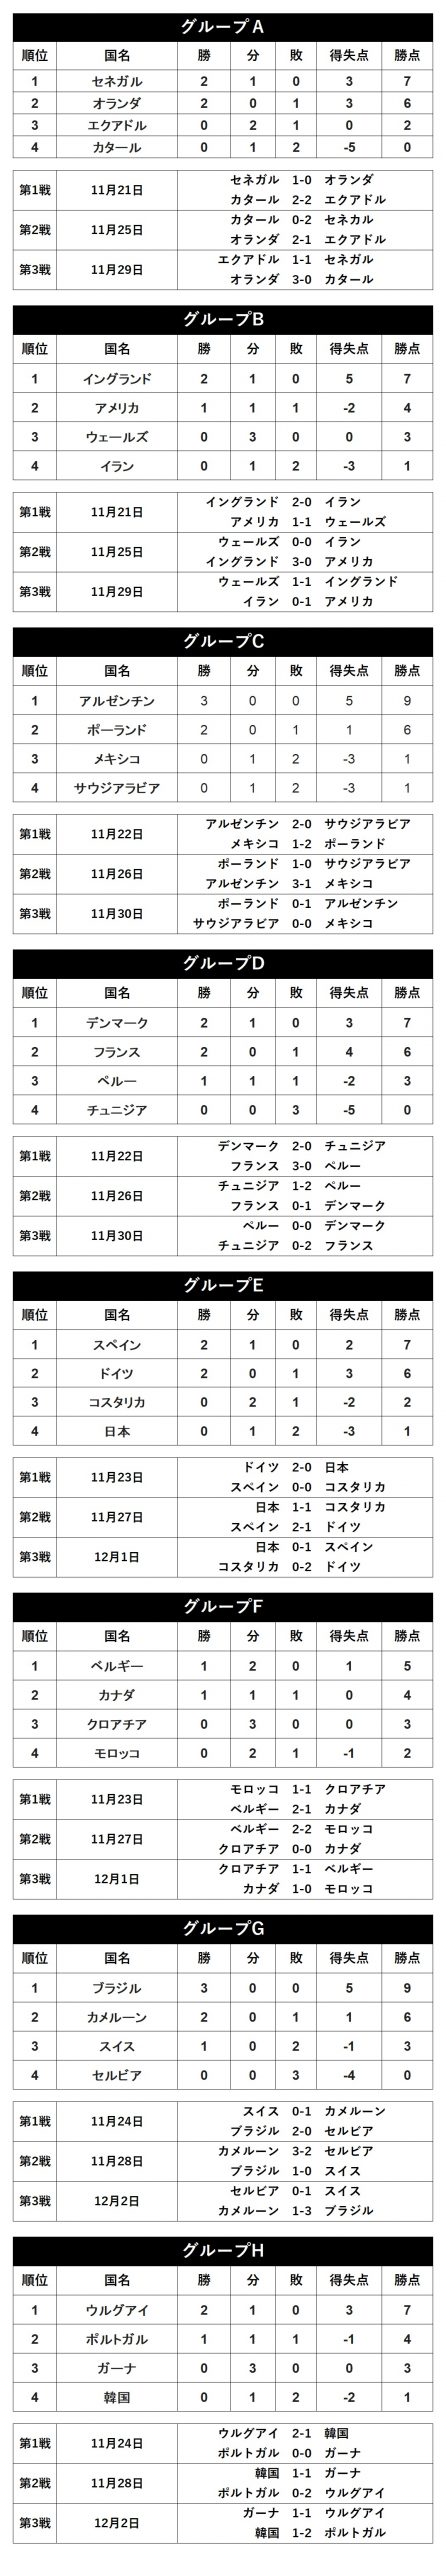 カタールw杯 全64試合スコア グループ順位 を米予想 日本代表は1分2敗の最下位 フットボールゾーン 2